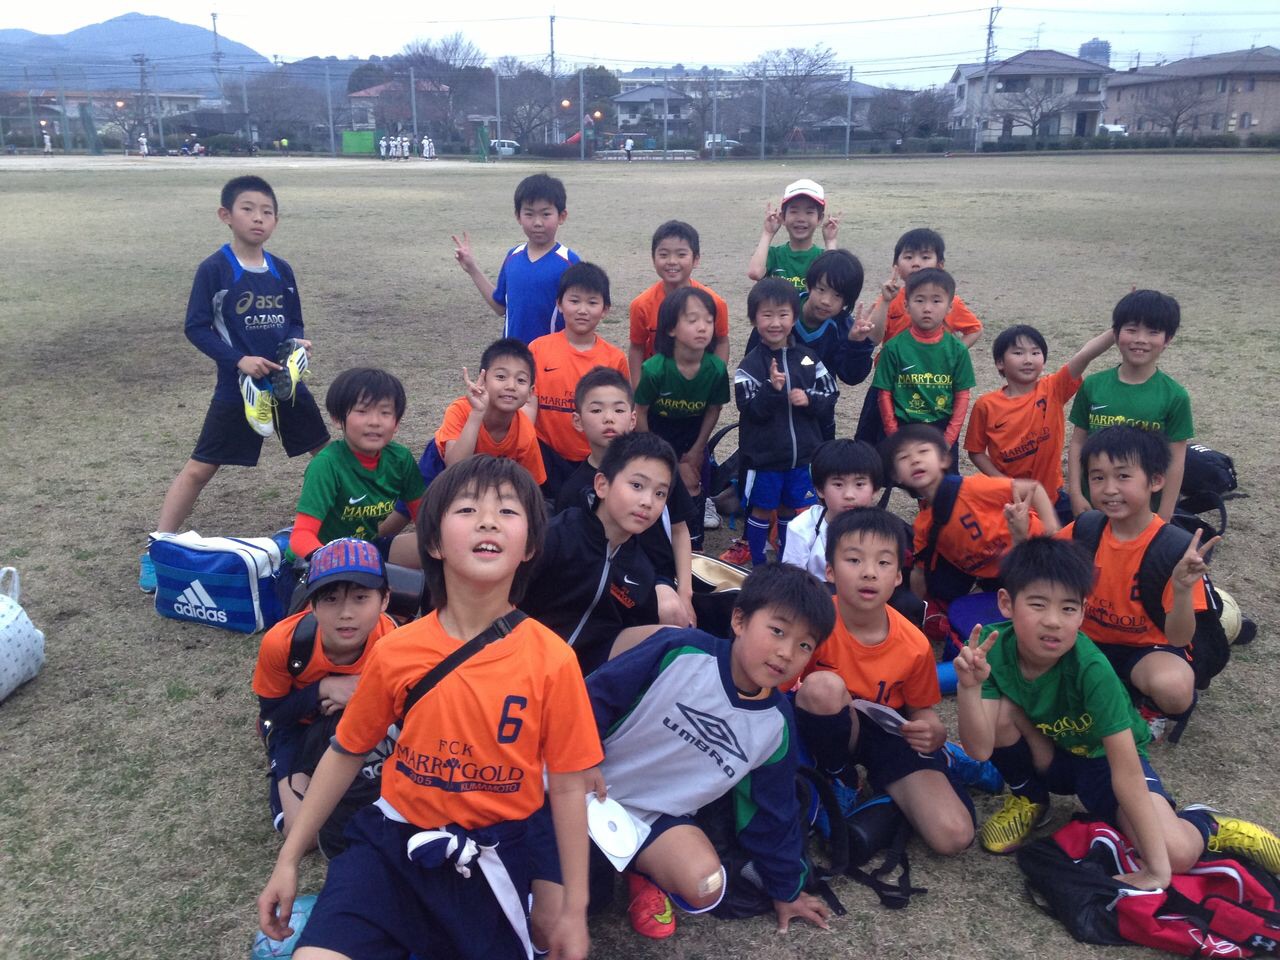 熊本県 Fckマリーゴールド サッカースクール 城山公園運動施設 スポサーチ